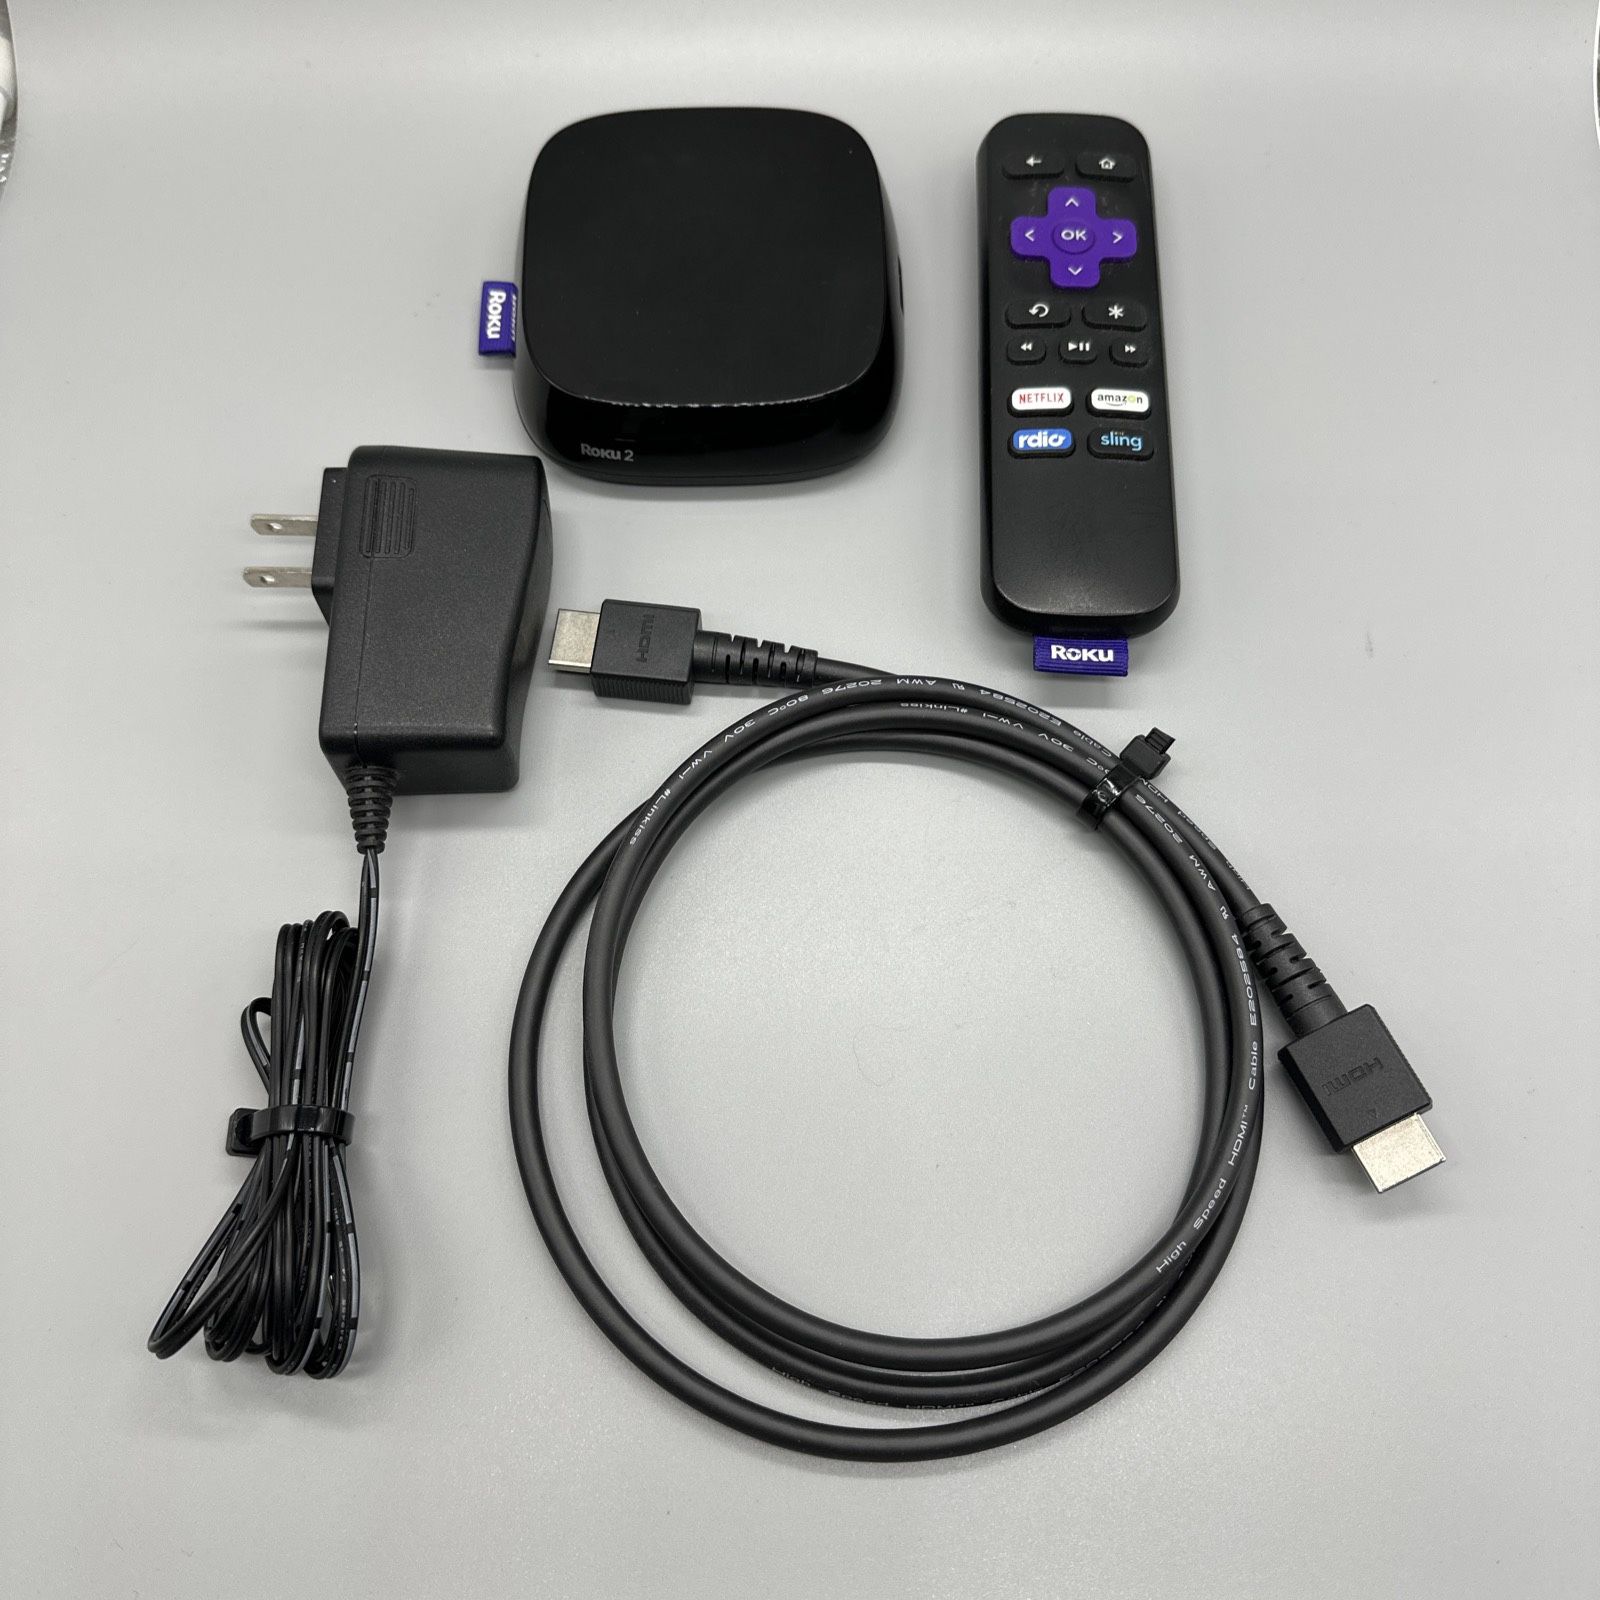 Roku 2 Media Streamer (4210X2) + Remote + Power Supply + HDMI Cable